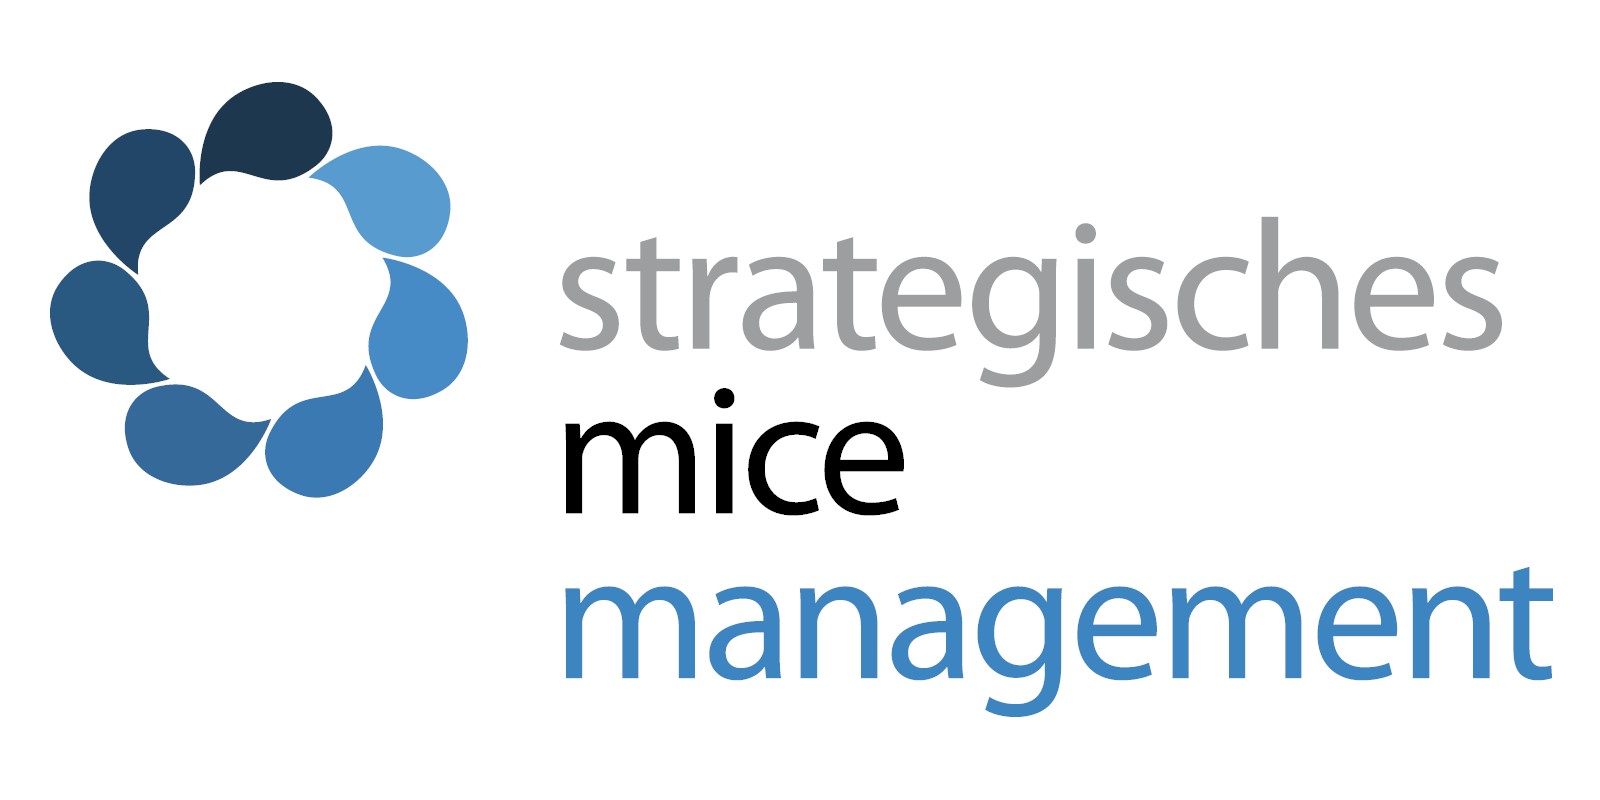 Strategisches Mice Management